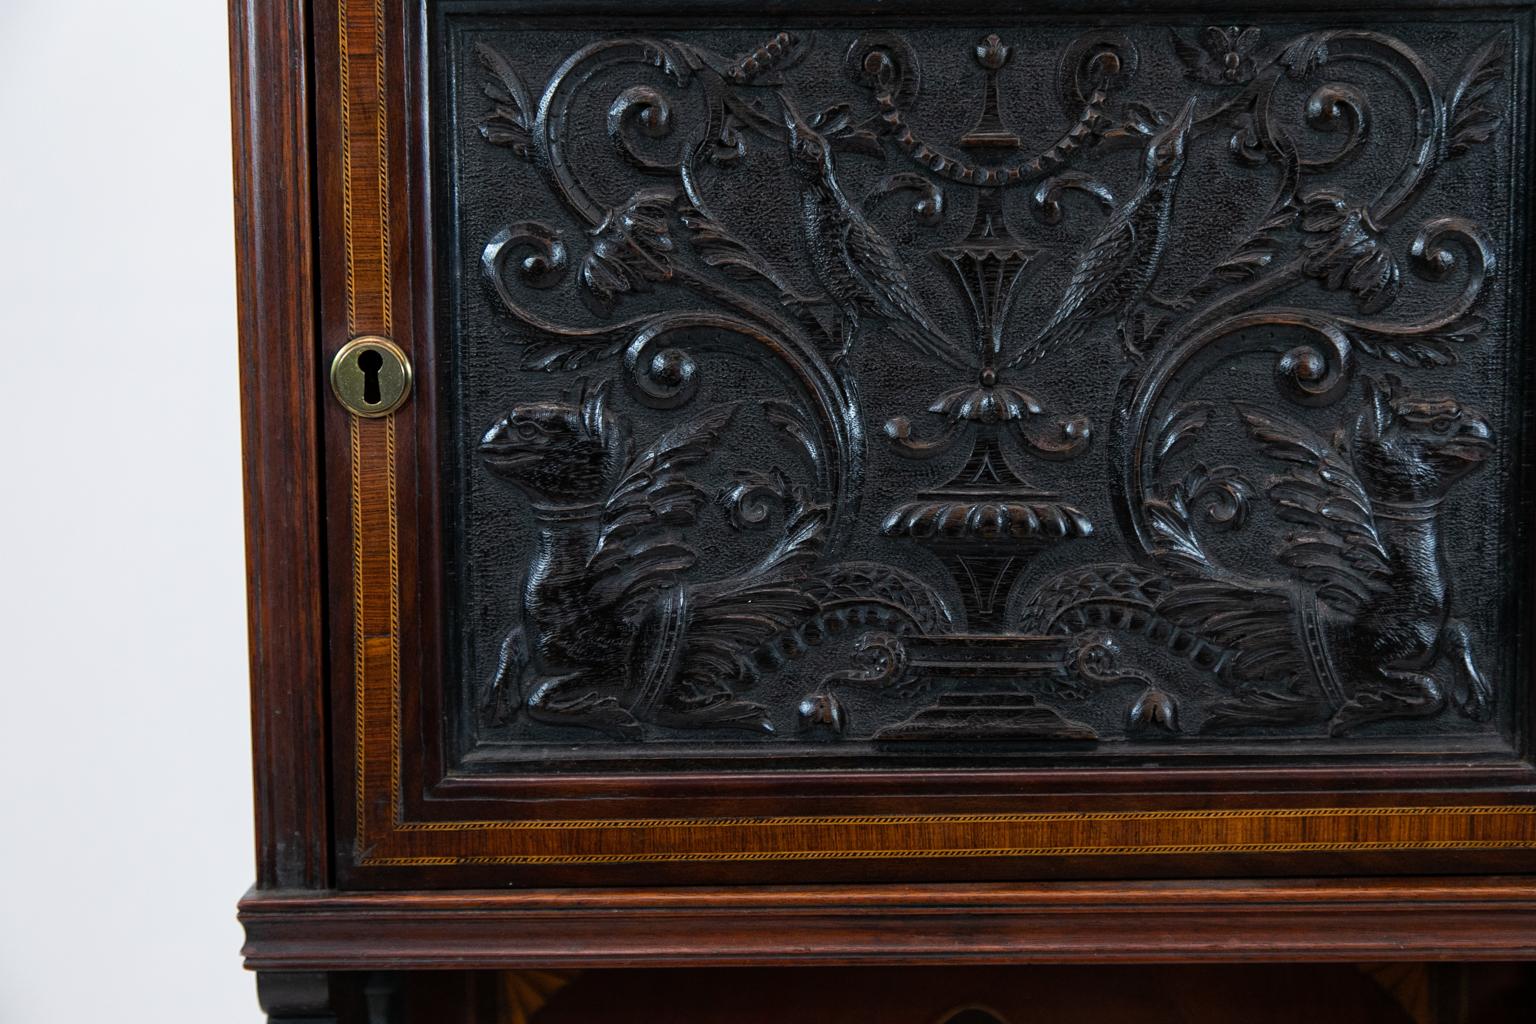 Le cabinet anglais en marqueterie est sculpté d'oiseaux et d'arabesques florales. La porte supérieure est bordée de bandes croisées avec des incrustations d'ébène, de buis et de bois de santal. Le panneau inférieur est incrusté d'une urne classique